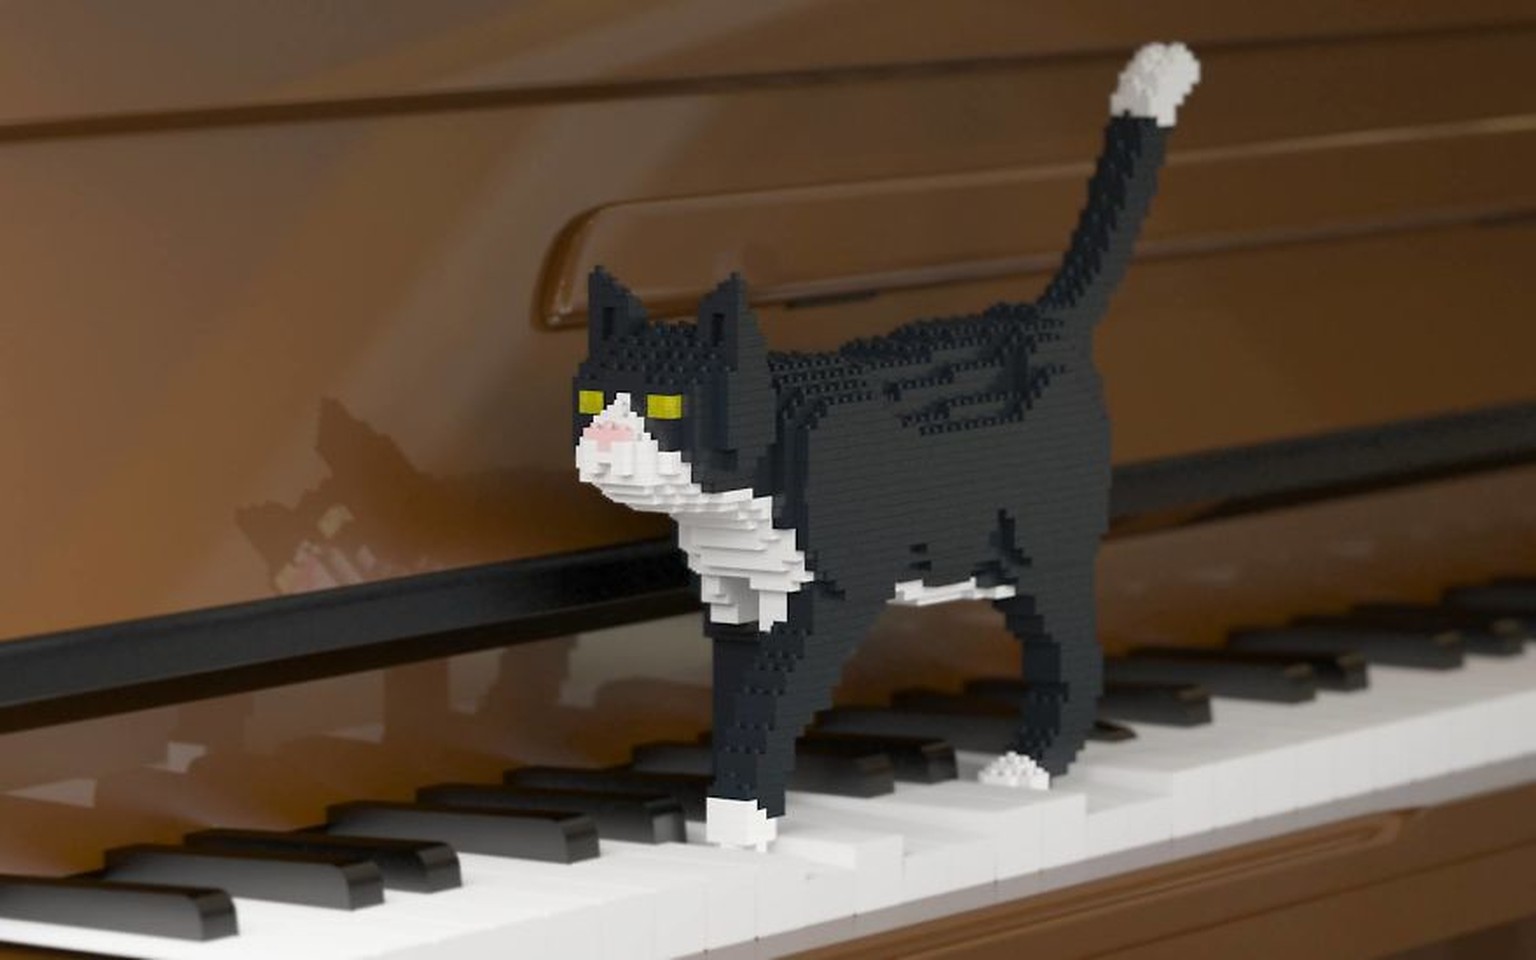 Katzen aus Lego / Lego-Katzen
https://www.jekca.com/